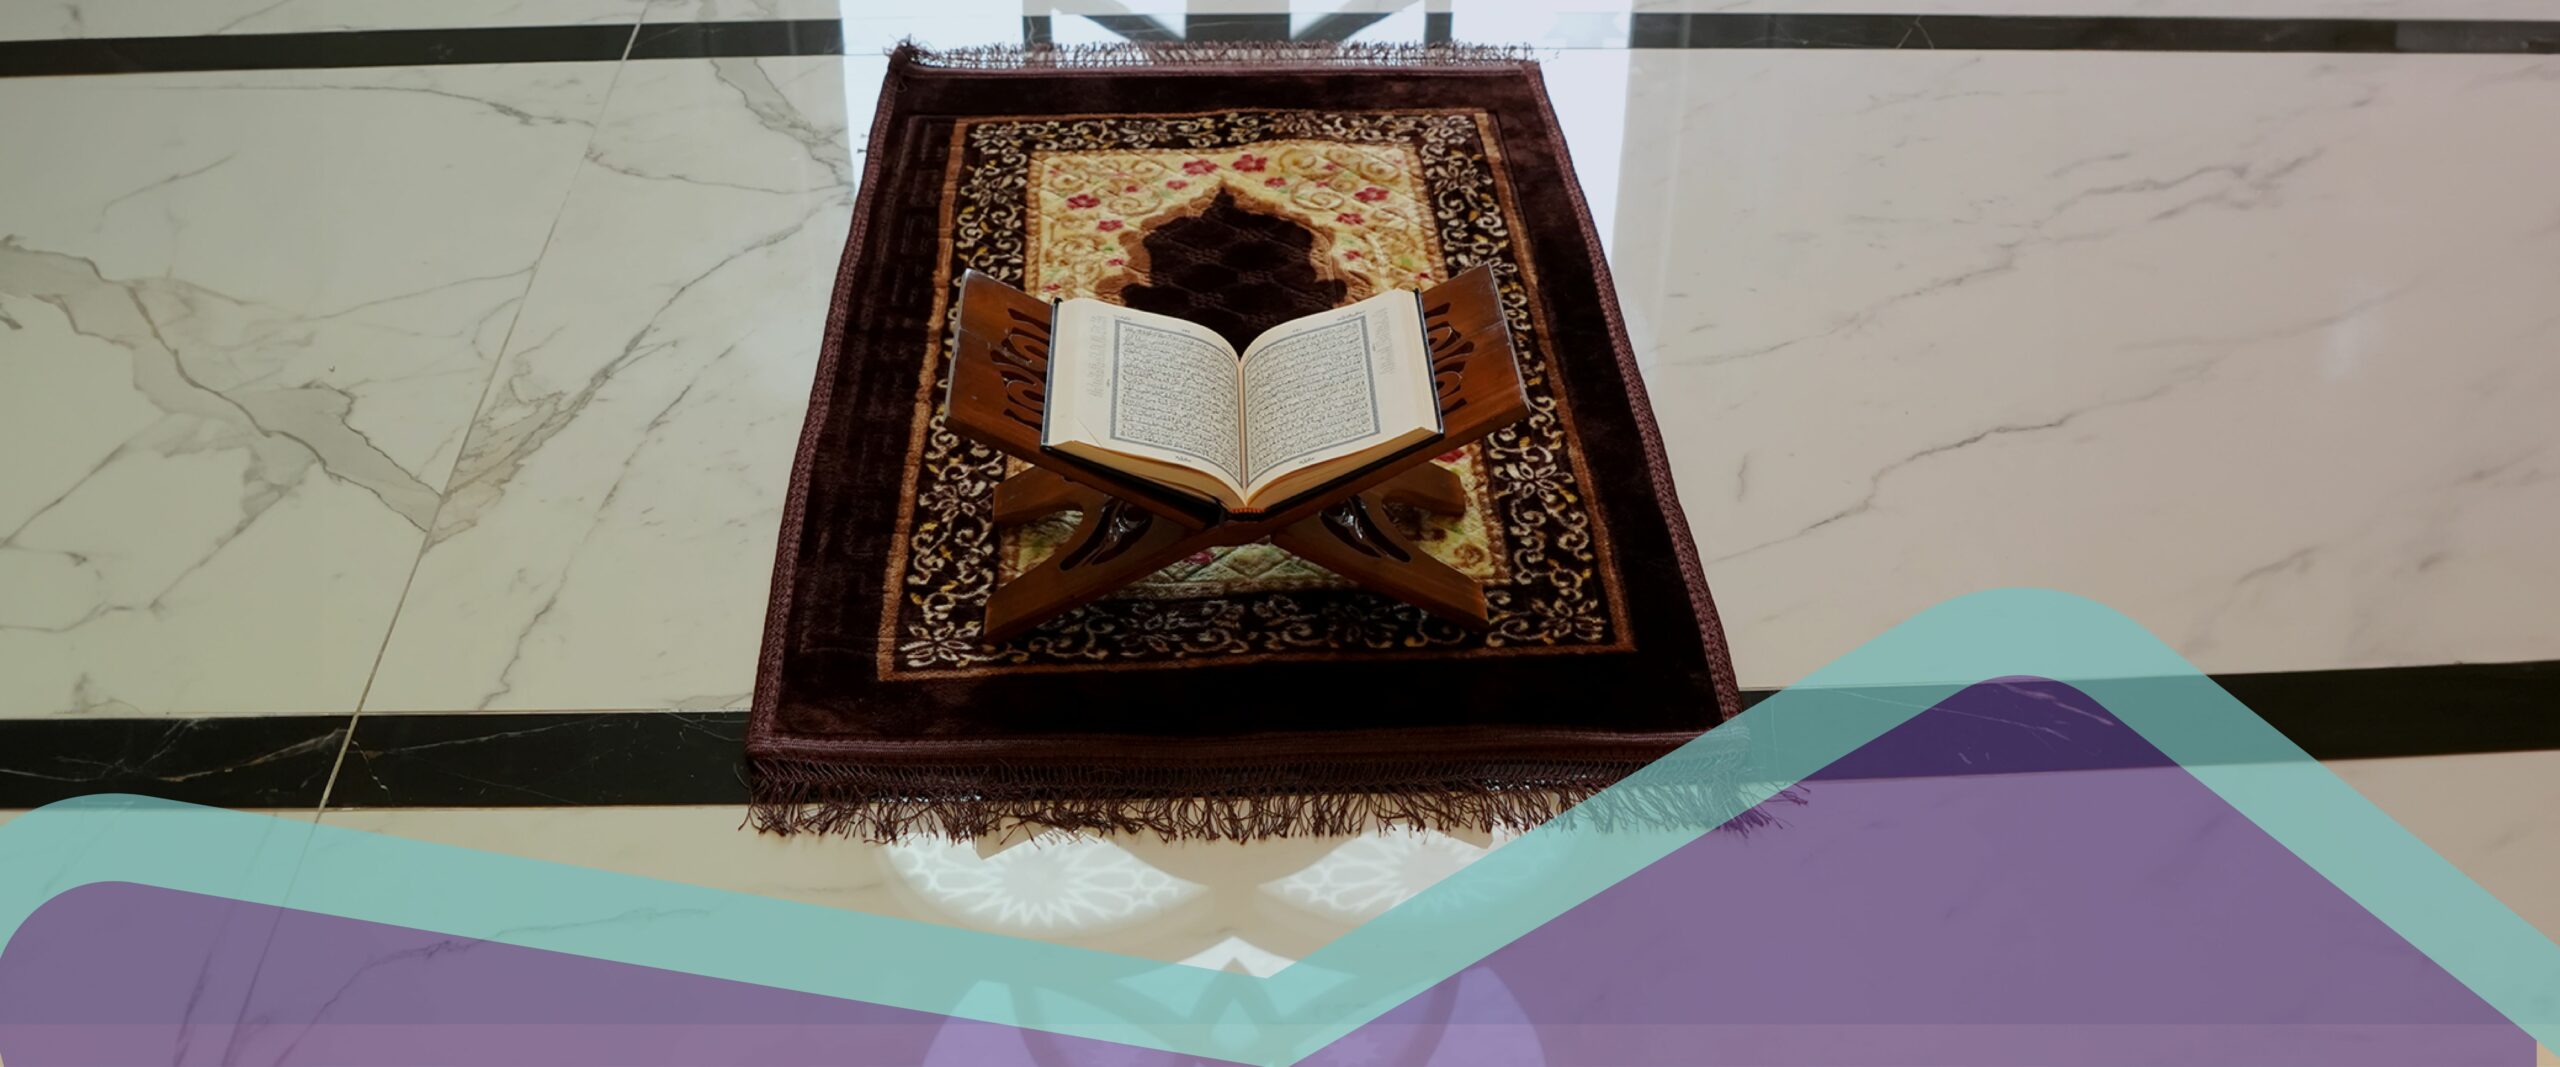 تعليم قراءة القرآن الكريم للكبار - وتعلم أحكام التجويد